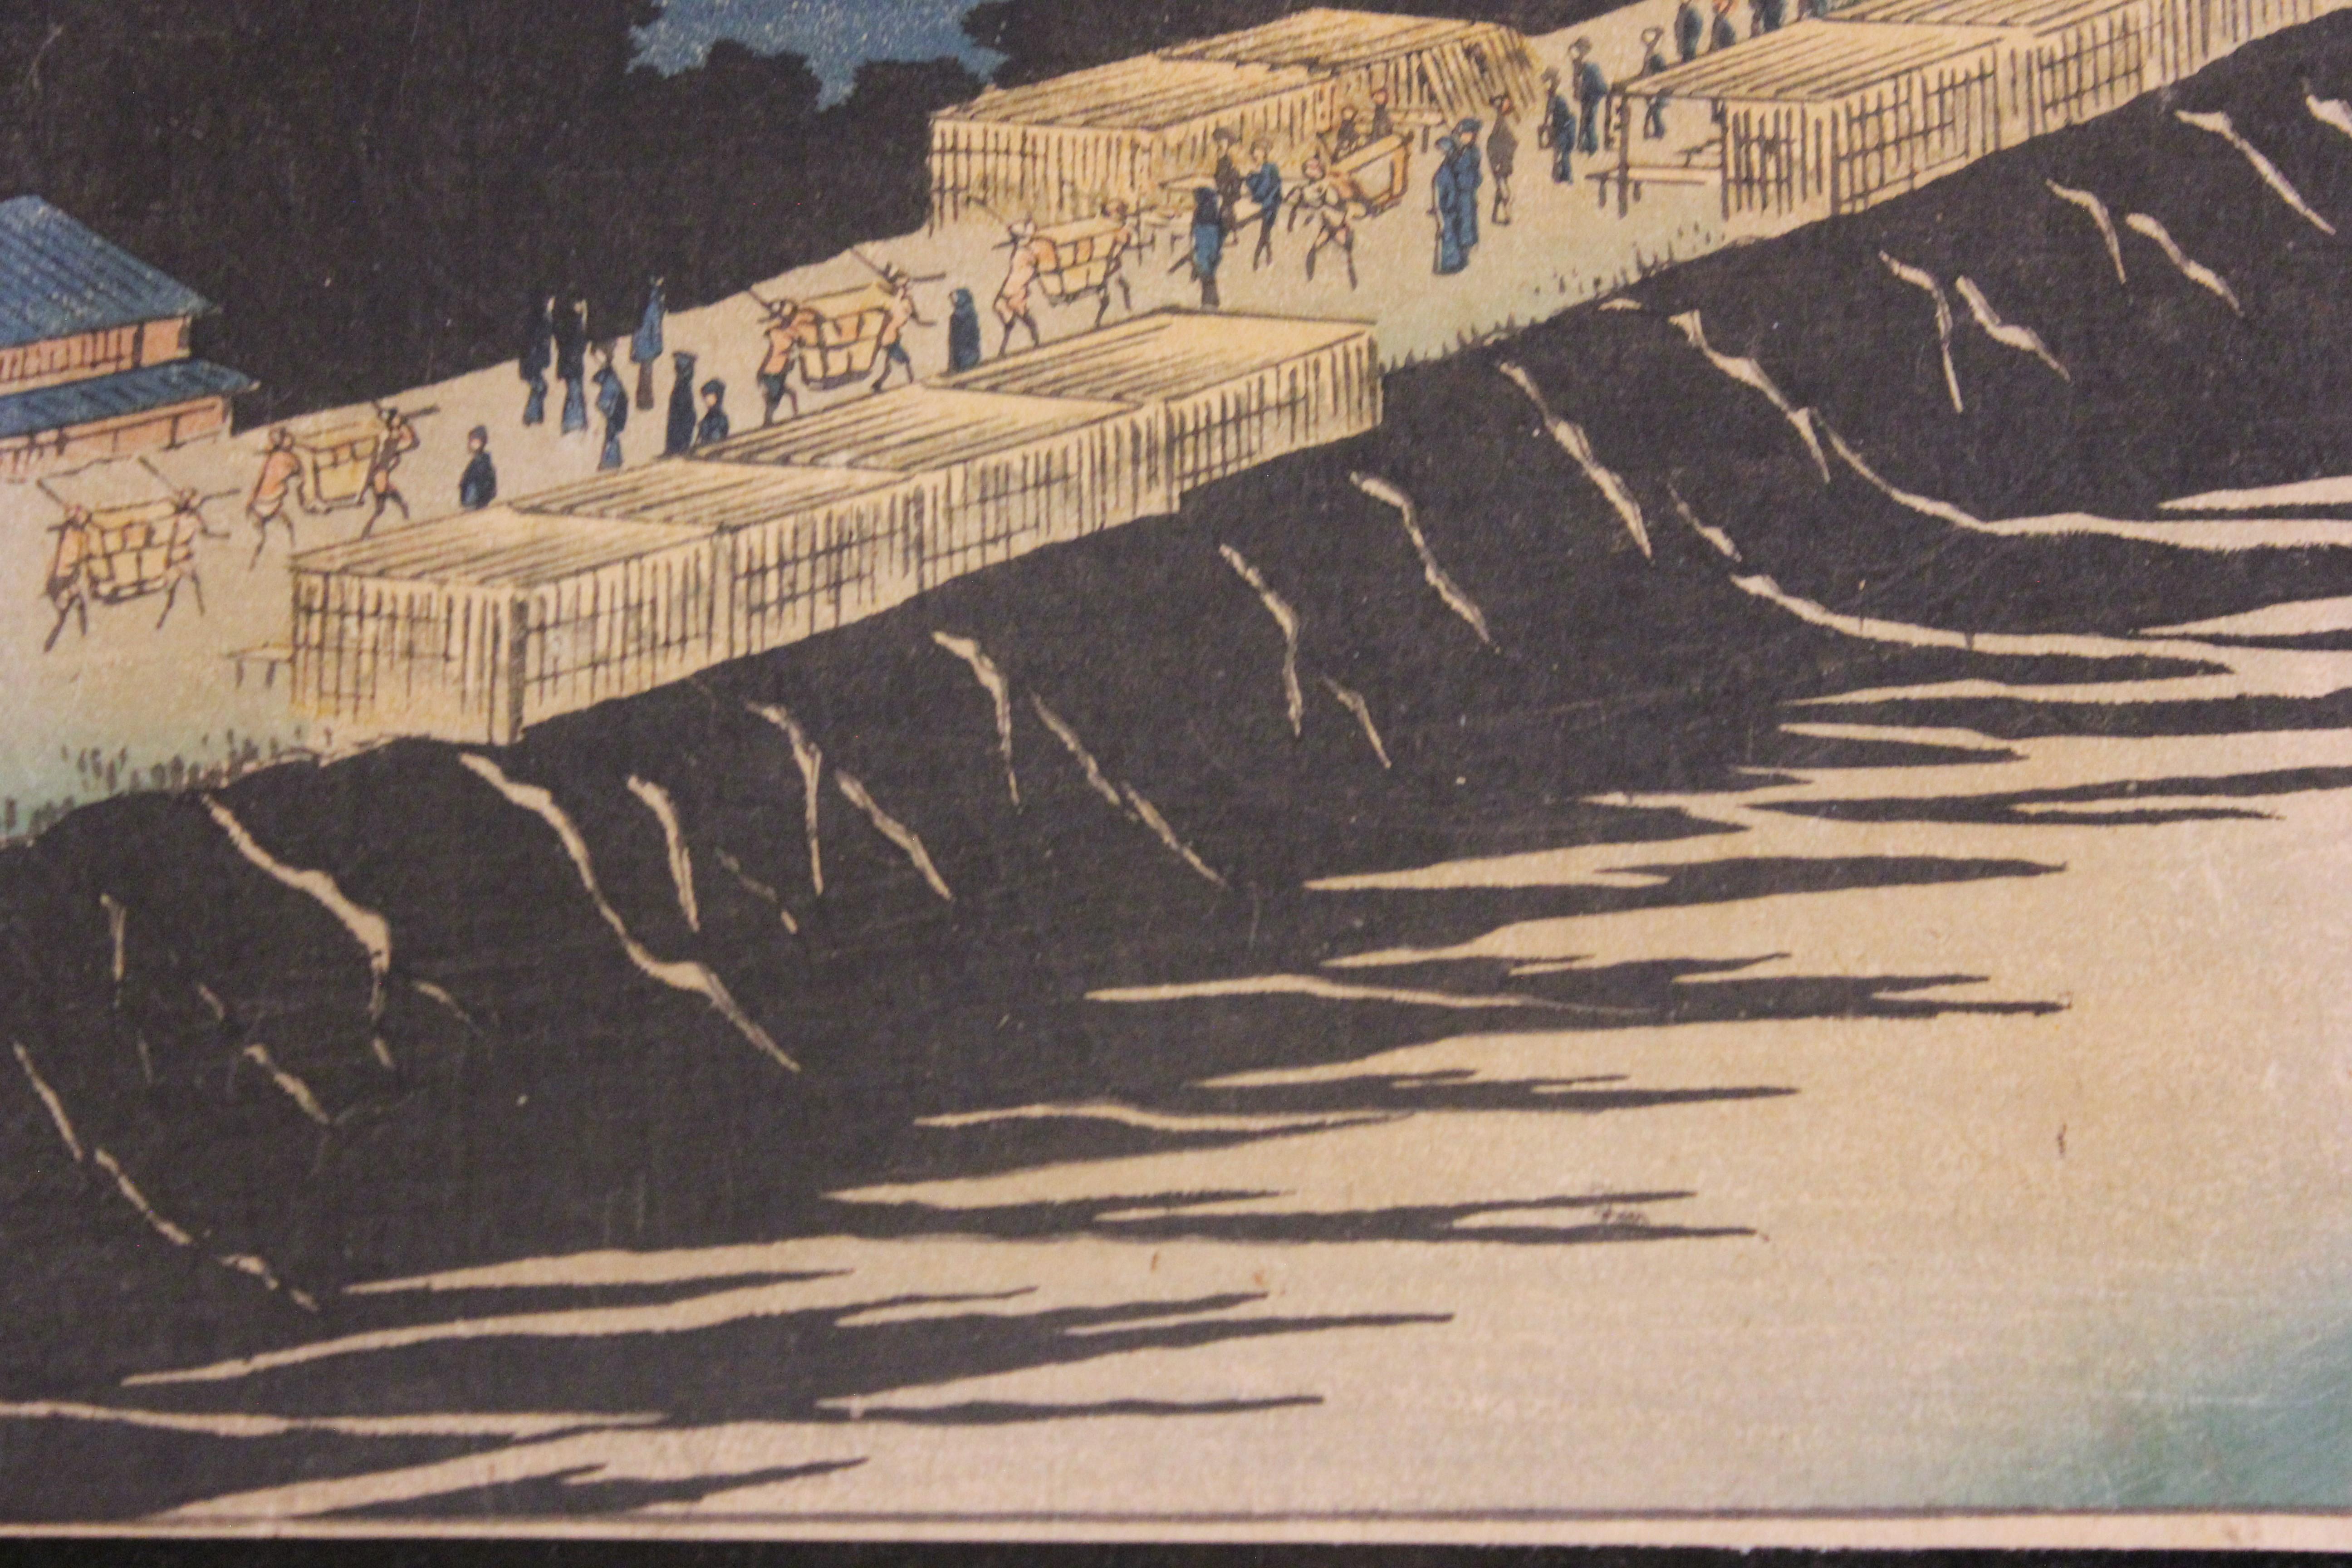 Gravure sur bois de la période Edo. Cette gravure fait partie d'une série que Hiroshige a réalisée et qui s'intitule 